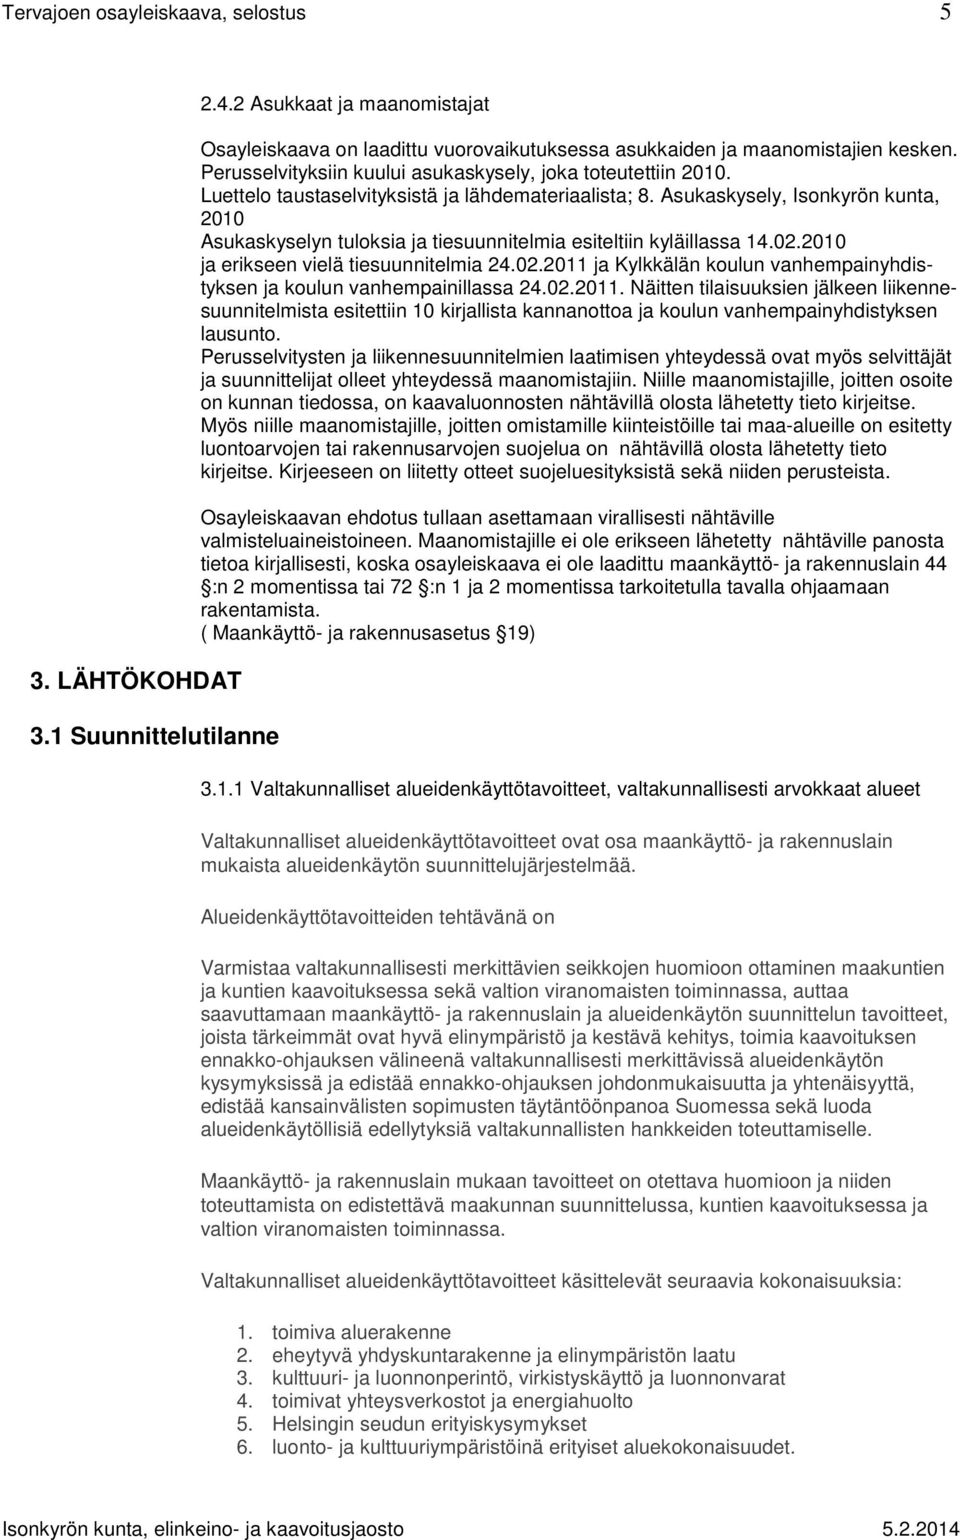 Asukaskysely, Isonkyrön kunta, 2010 Asukaskyselyn tuloksia ja tiesuunnitelmia esiteltiin kyläillassa 14.02.2010 ja erikseen vielä tiesuunnitelmia 24.02.2011 ja Kylkkälän koulun vanhempainyhdistyksen ja koulun vanhempainillassa 24.